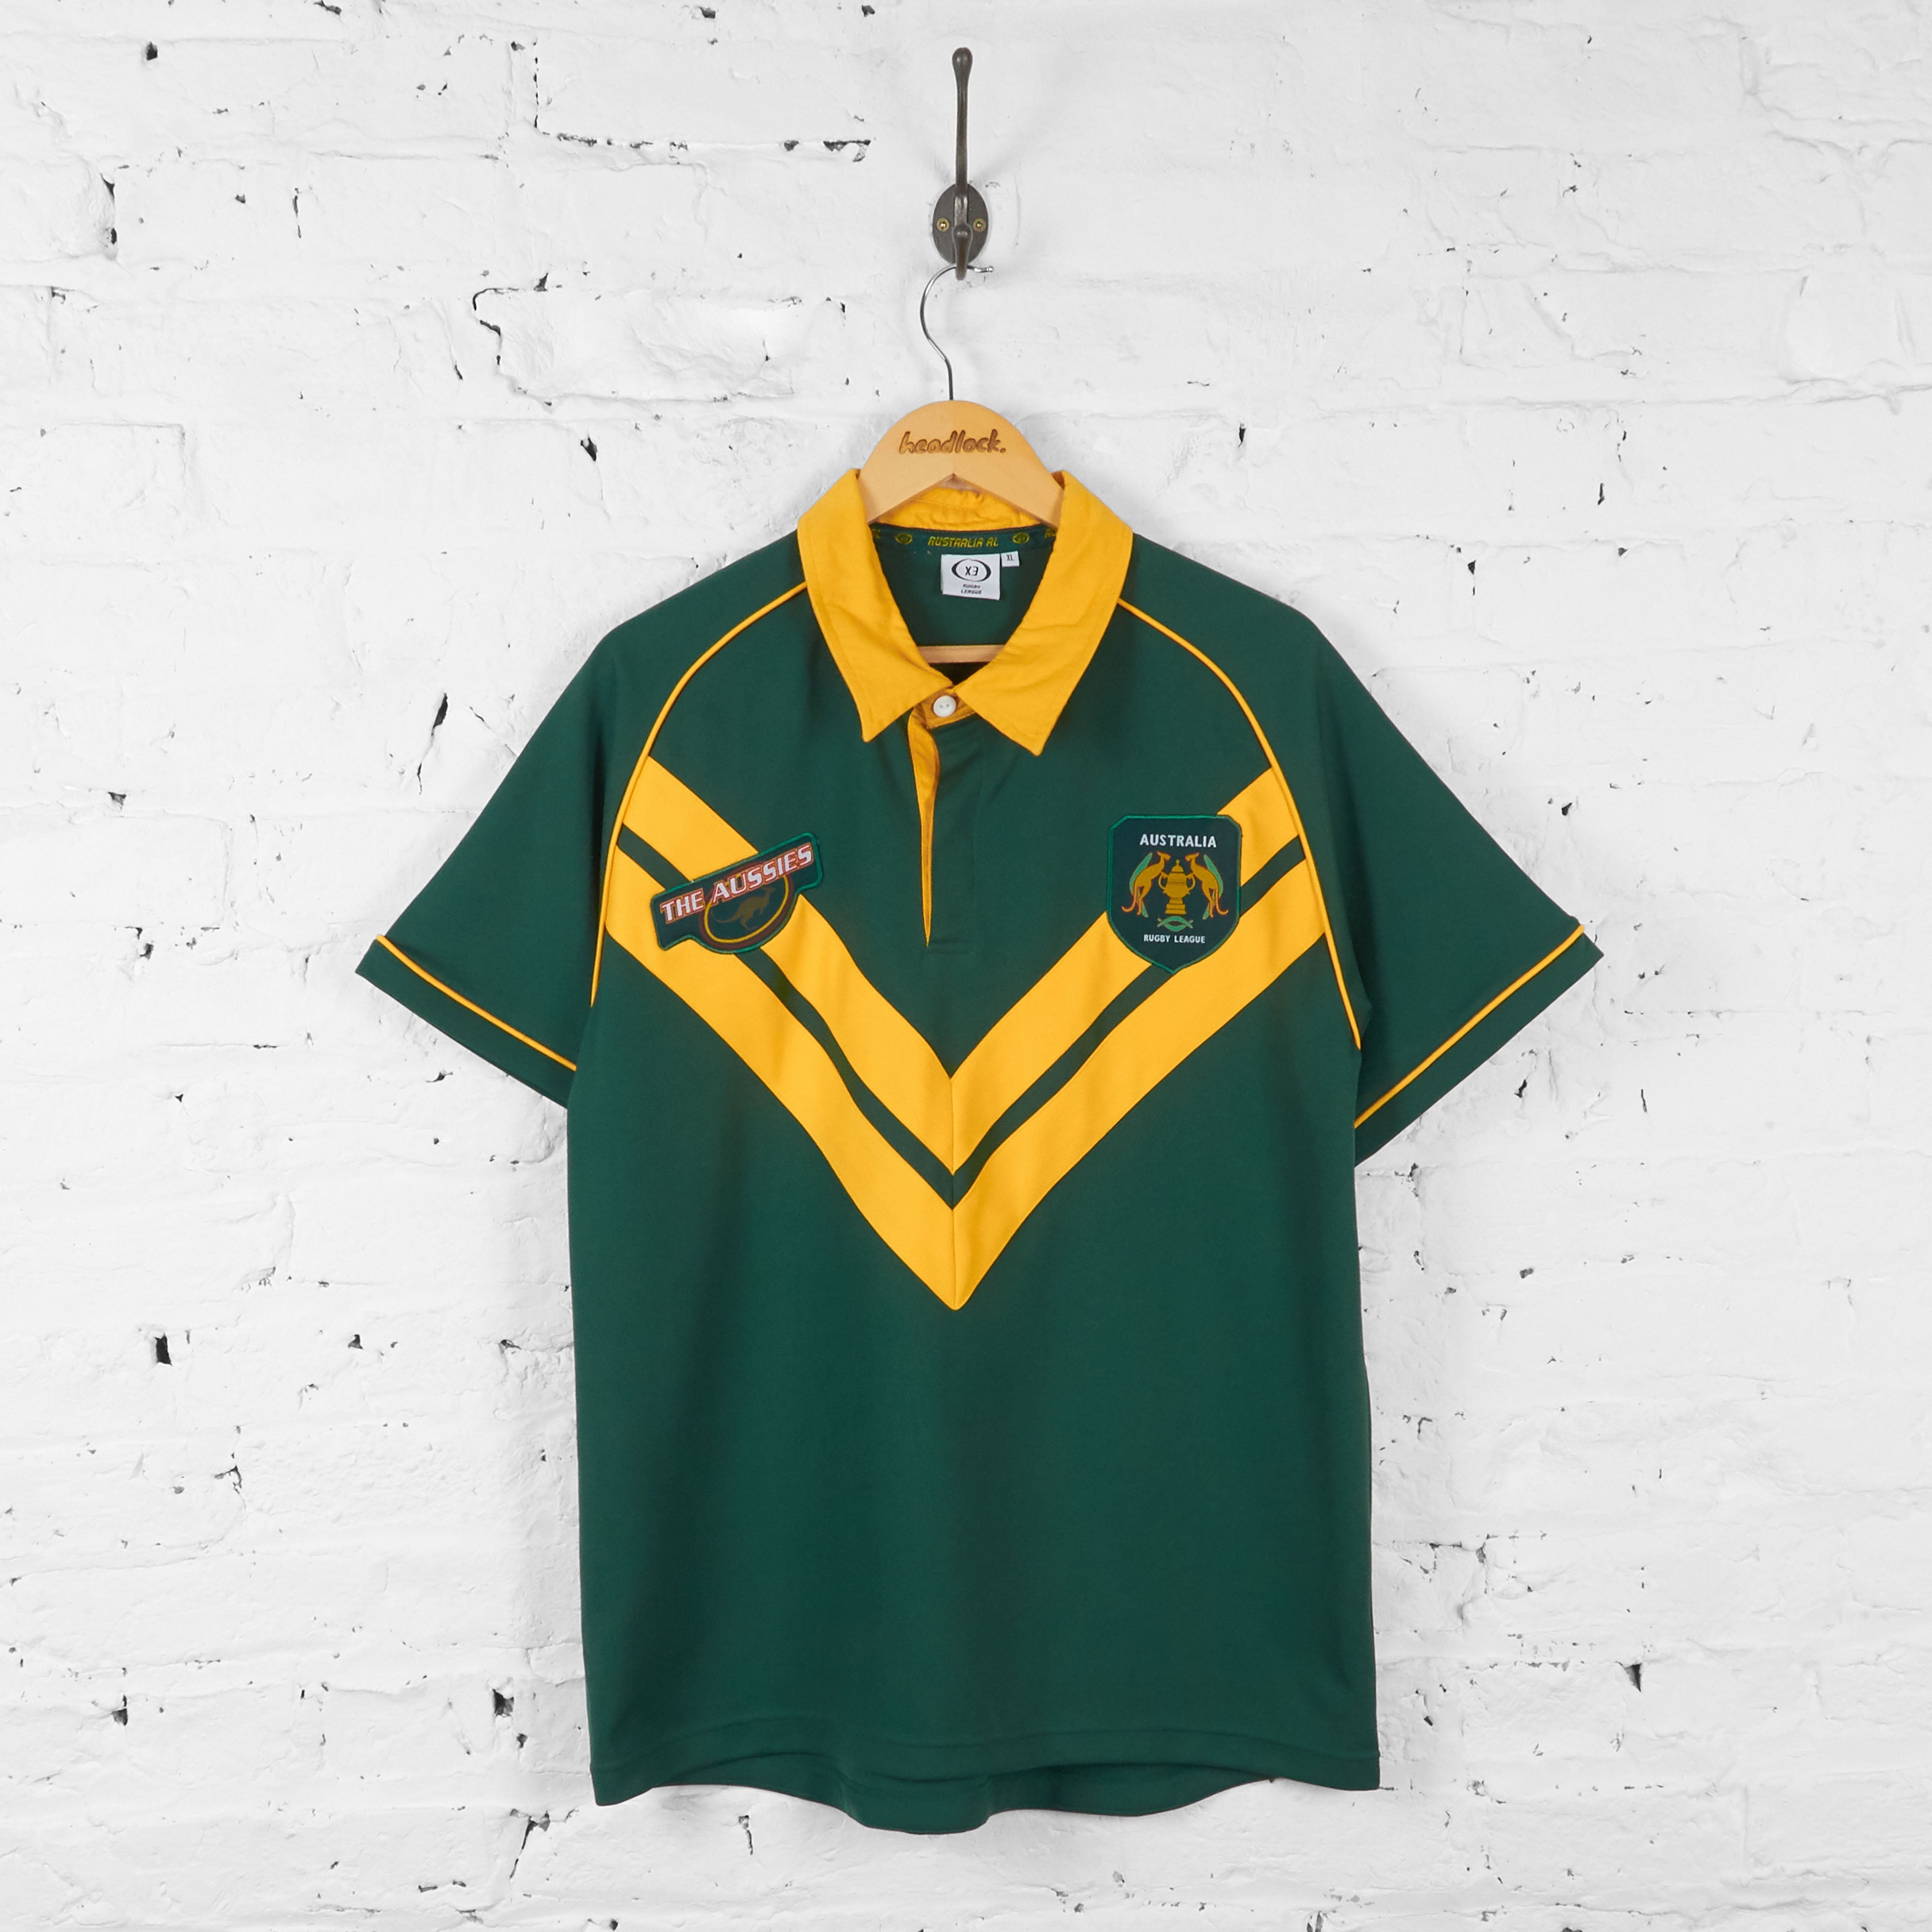 Australia Rugby League Shirt - Green